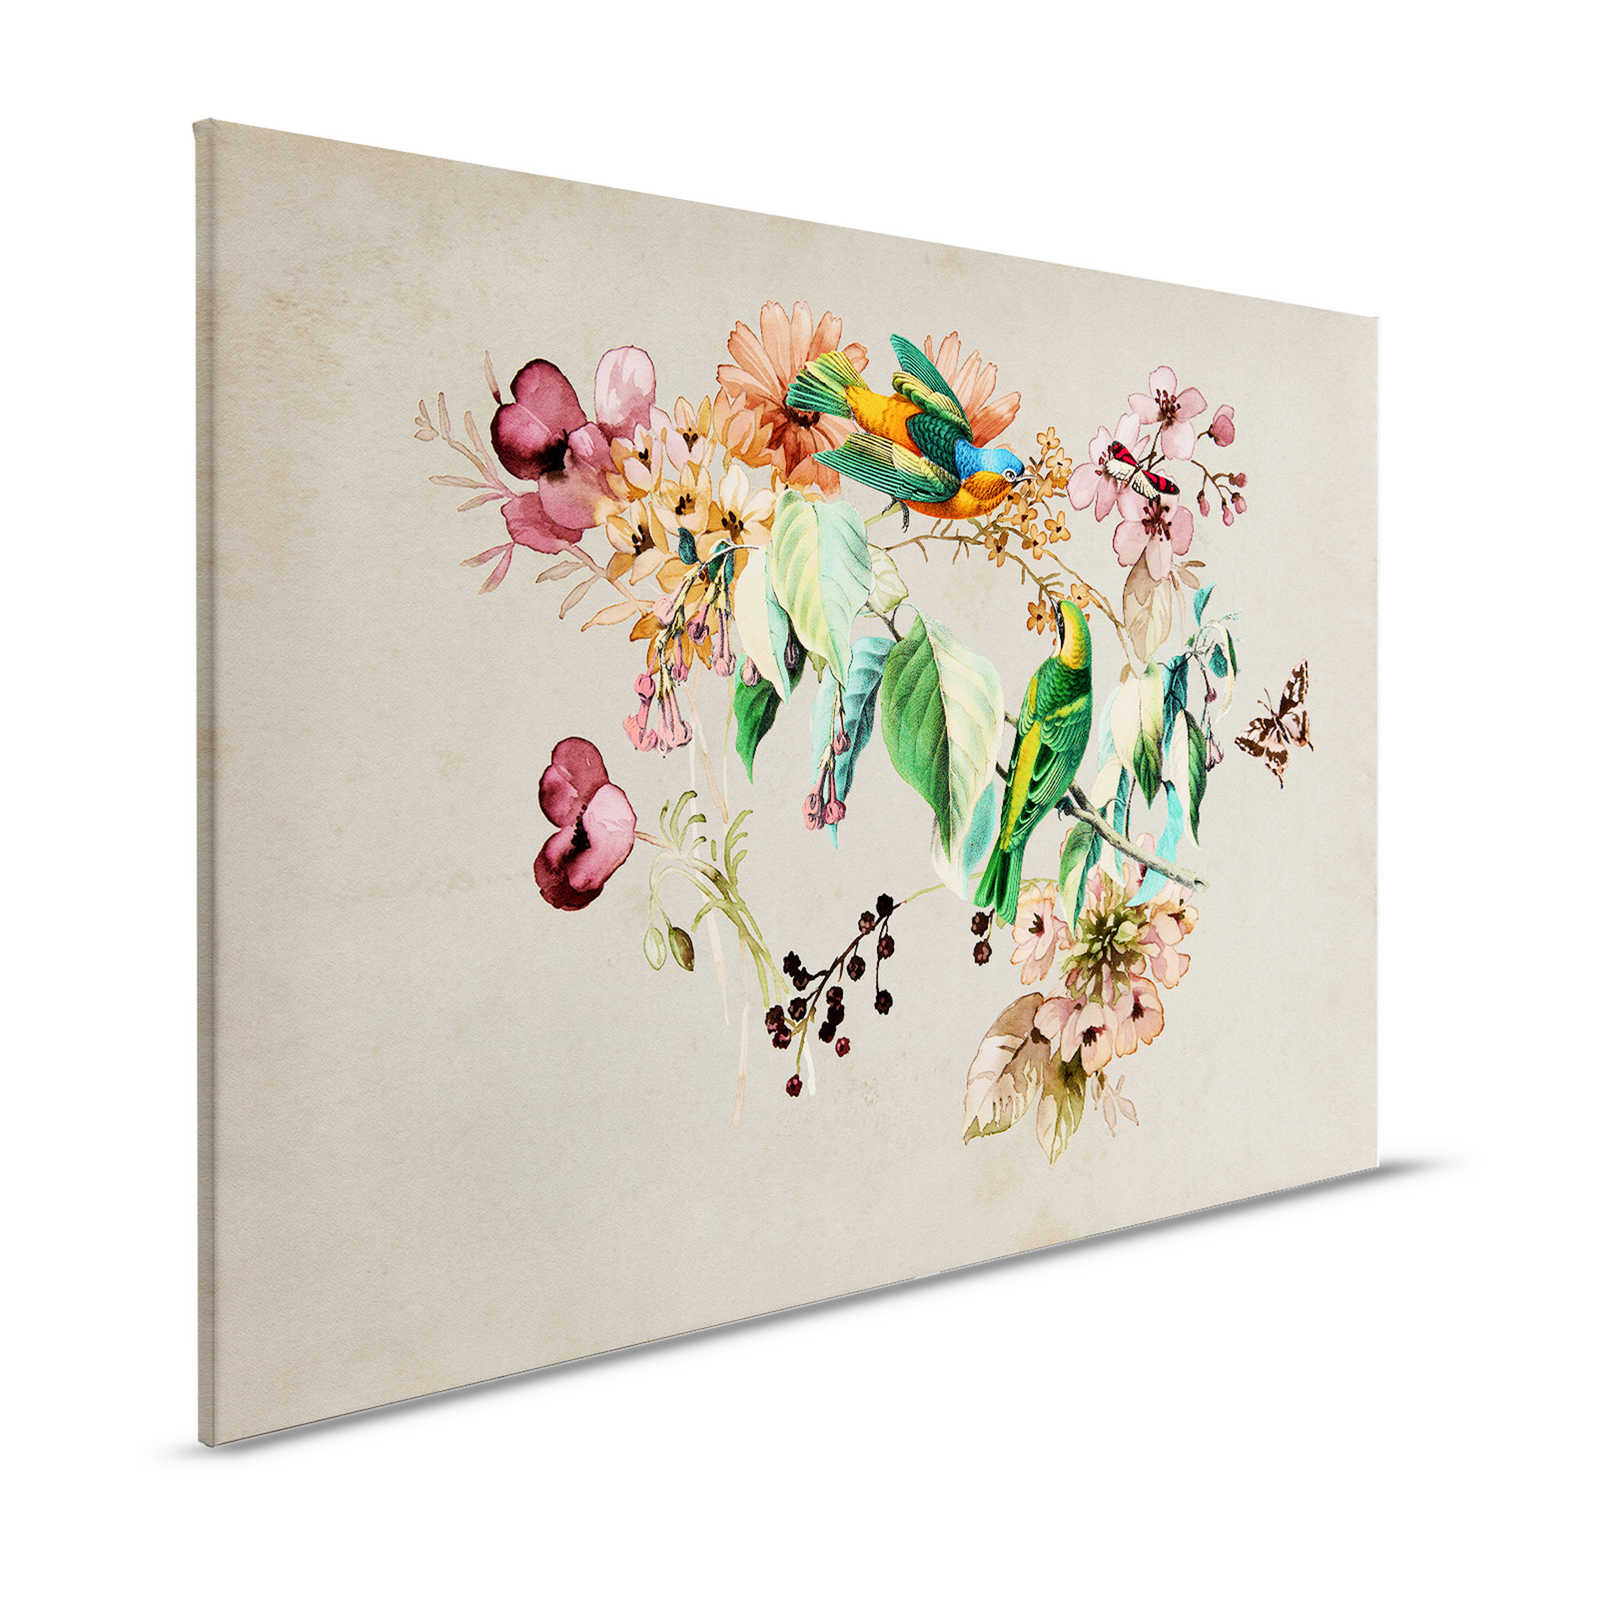 Nido d'amore 1 - Quadro su tela con fiori e uccelli colorati ad acquerello - 1,20 m x 0,80 m
